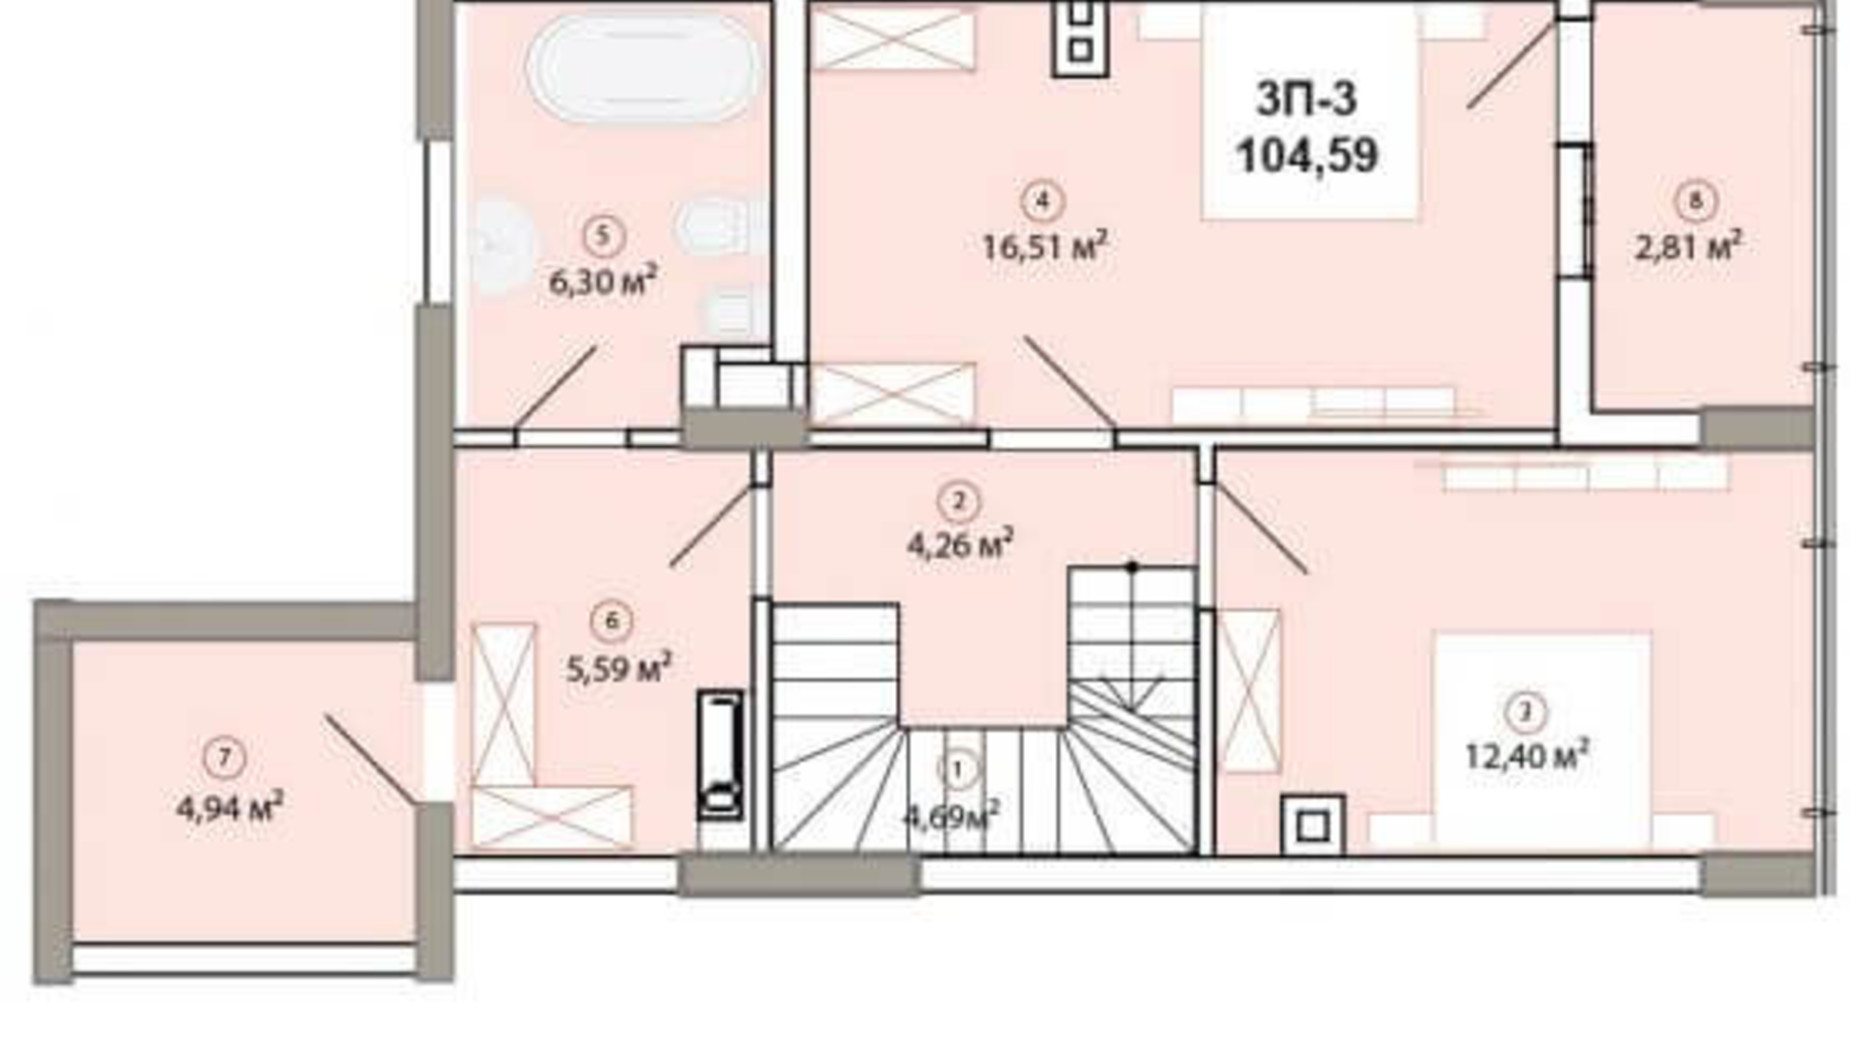 Планировка много­уровневой квартиры в ЖК Edelweiss House 104.59 м², фото 225135